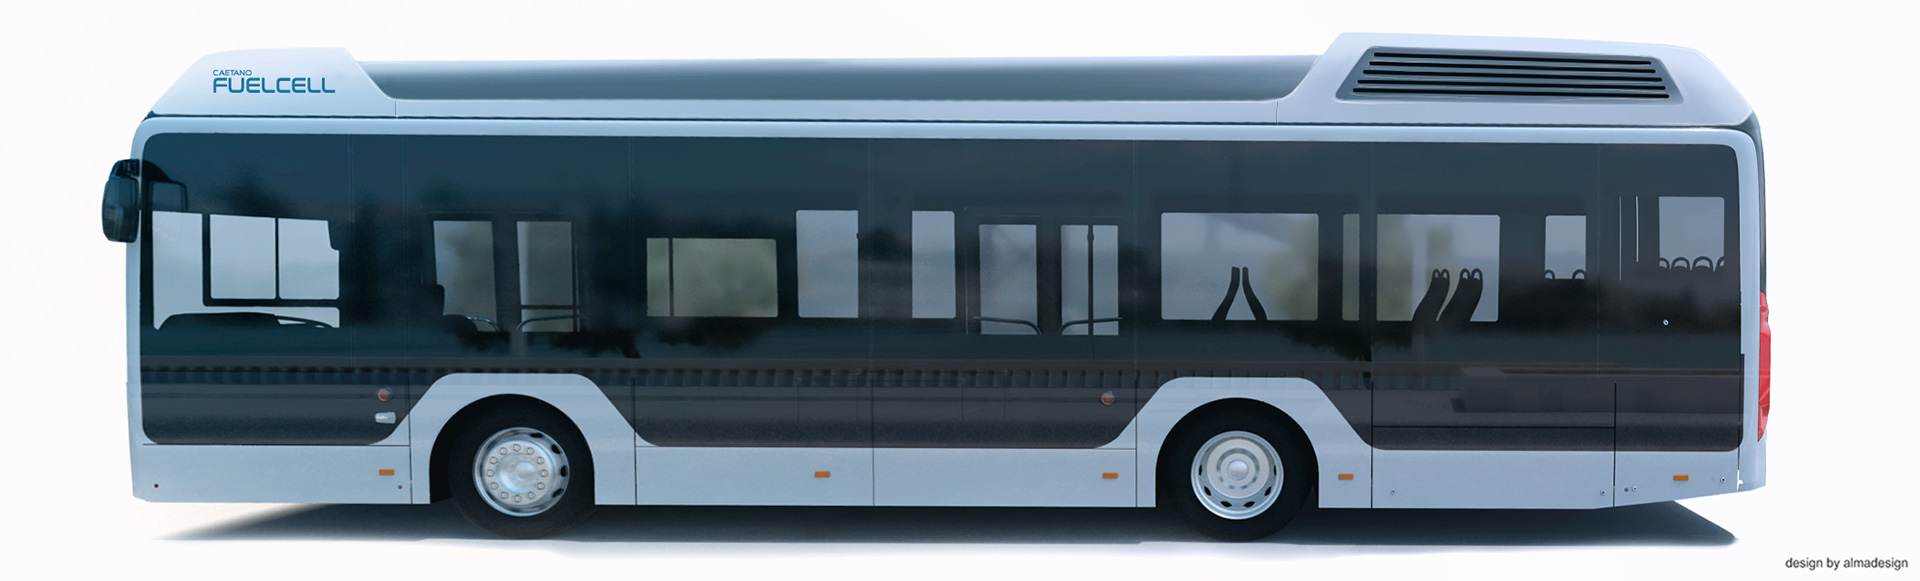 トヨタ、ポルトガルのバス製造会社カエタノ・バス社に燃料電池システムを供給